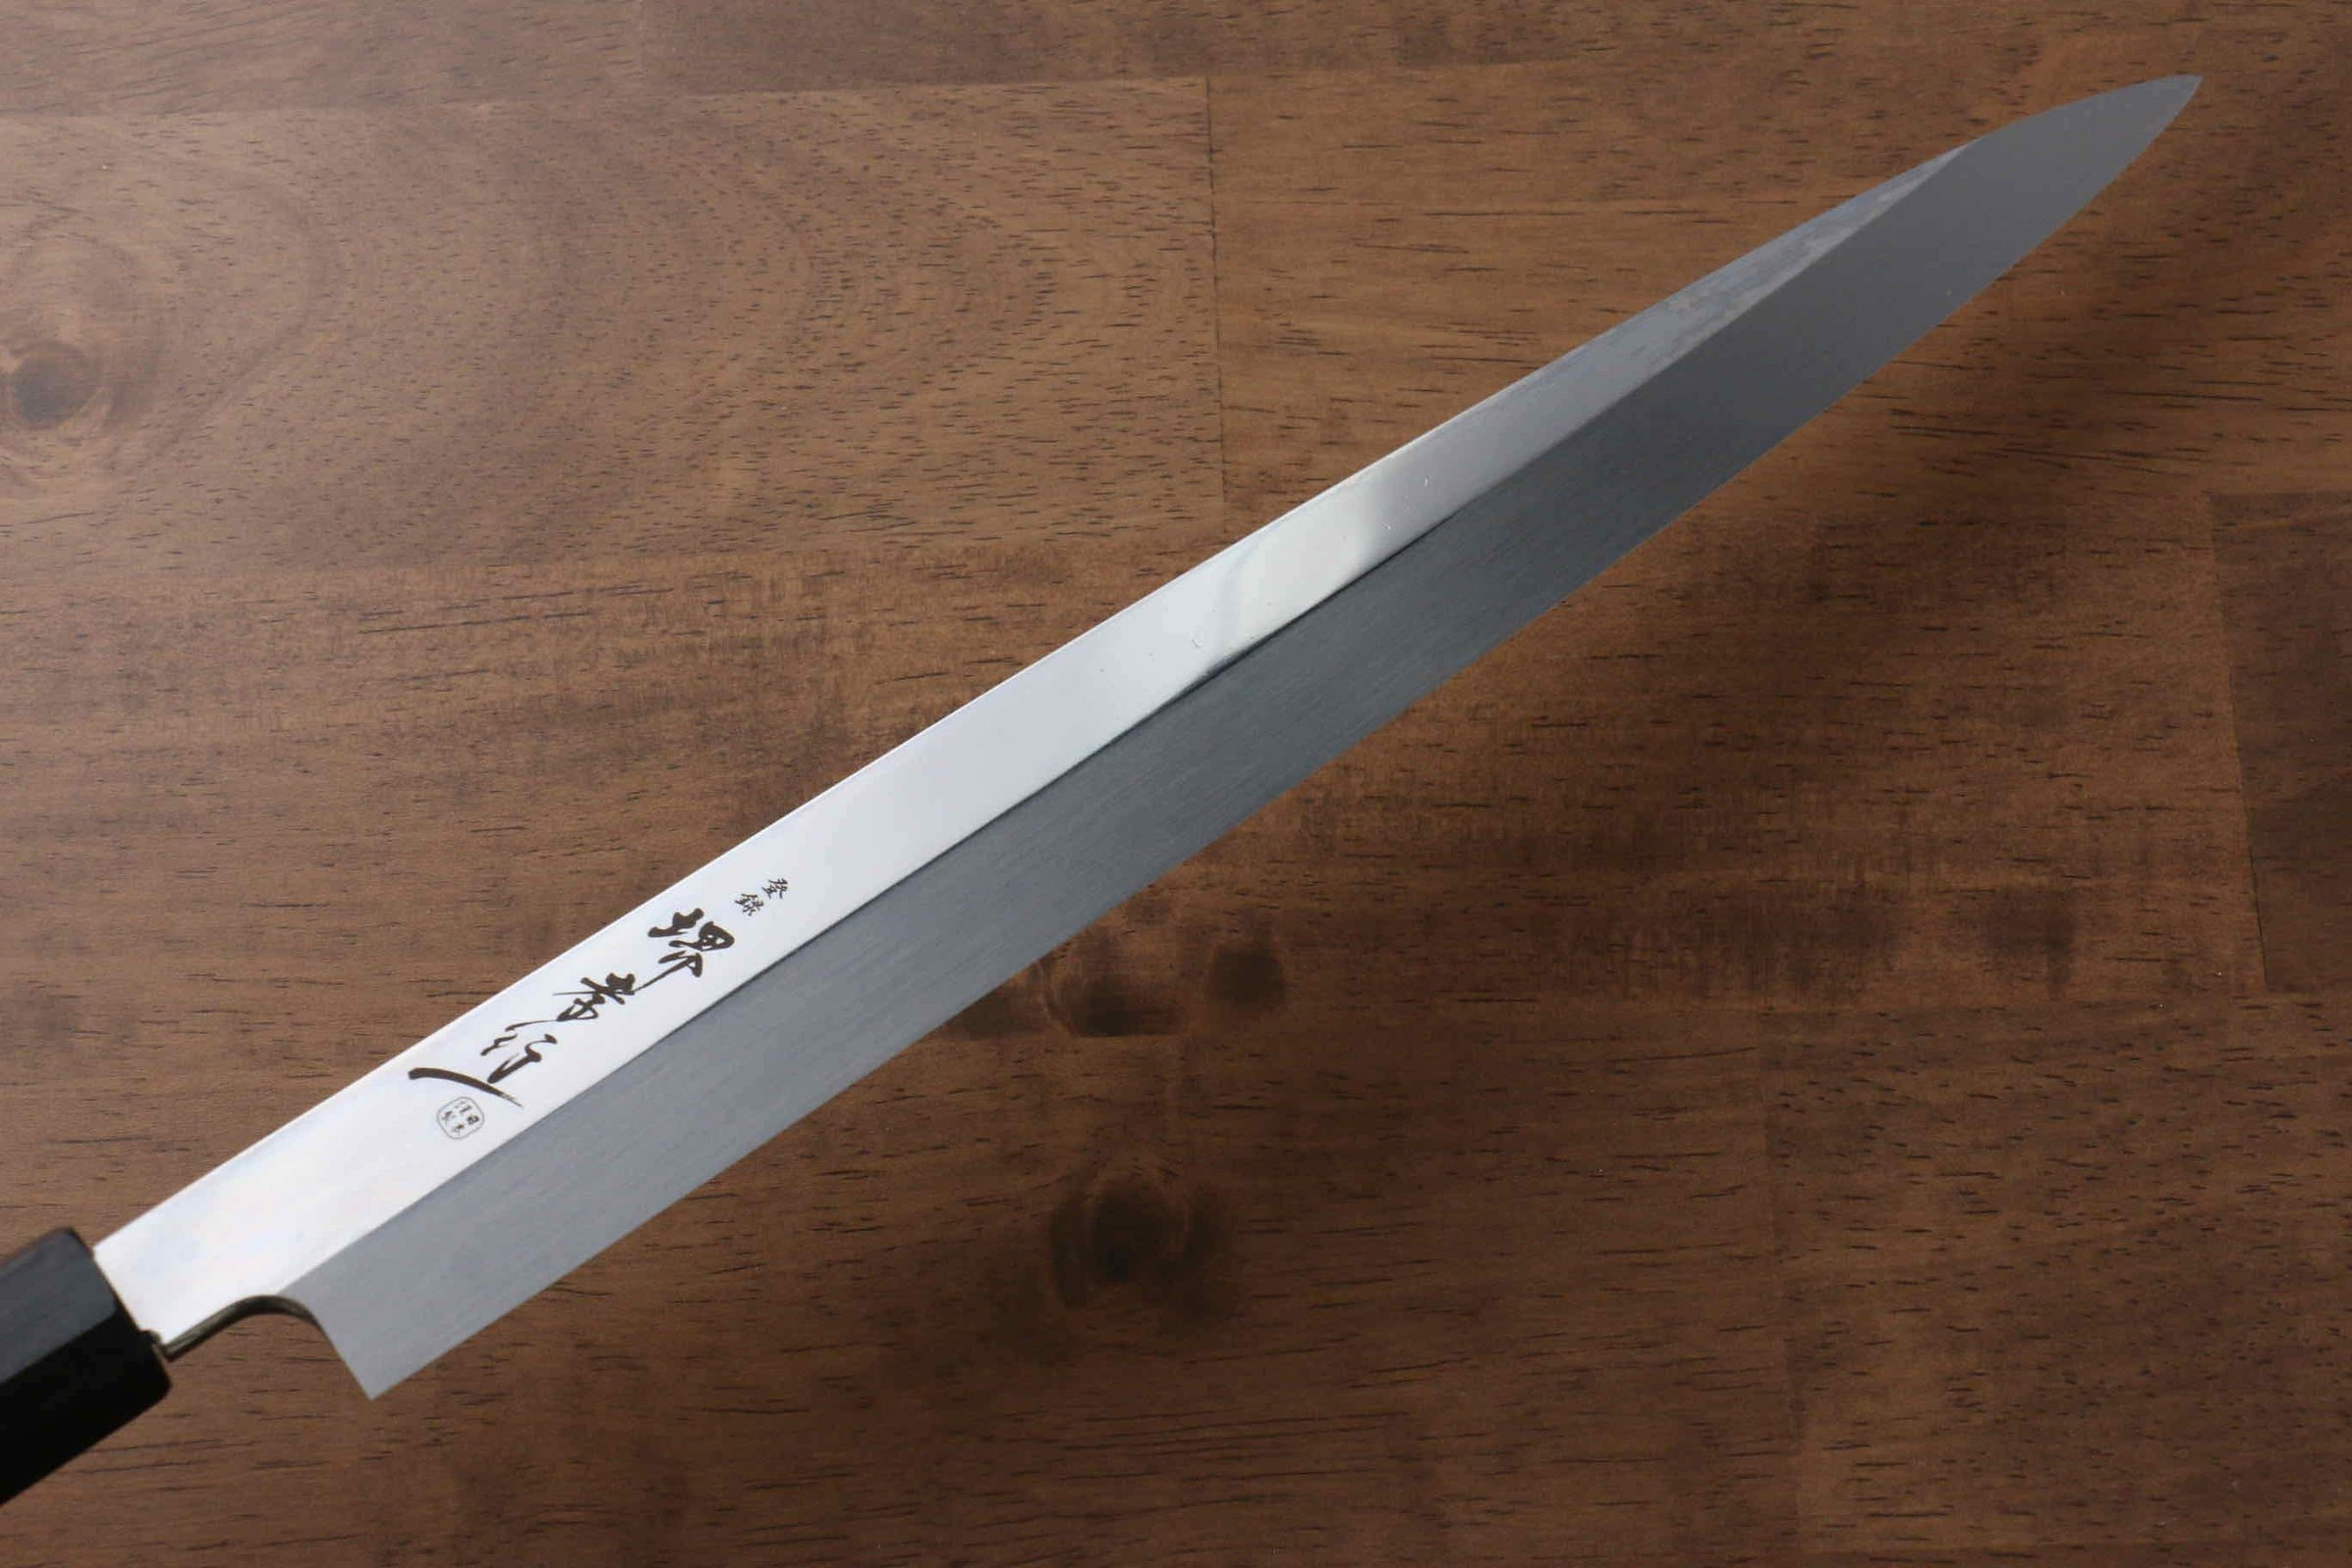 堺孝行銀龍本燒瑞典鋼鏡面處理柳刃日本刀300mm 雞翅木（兩側帶水牛環型